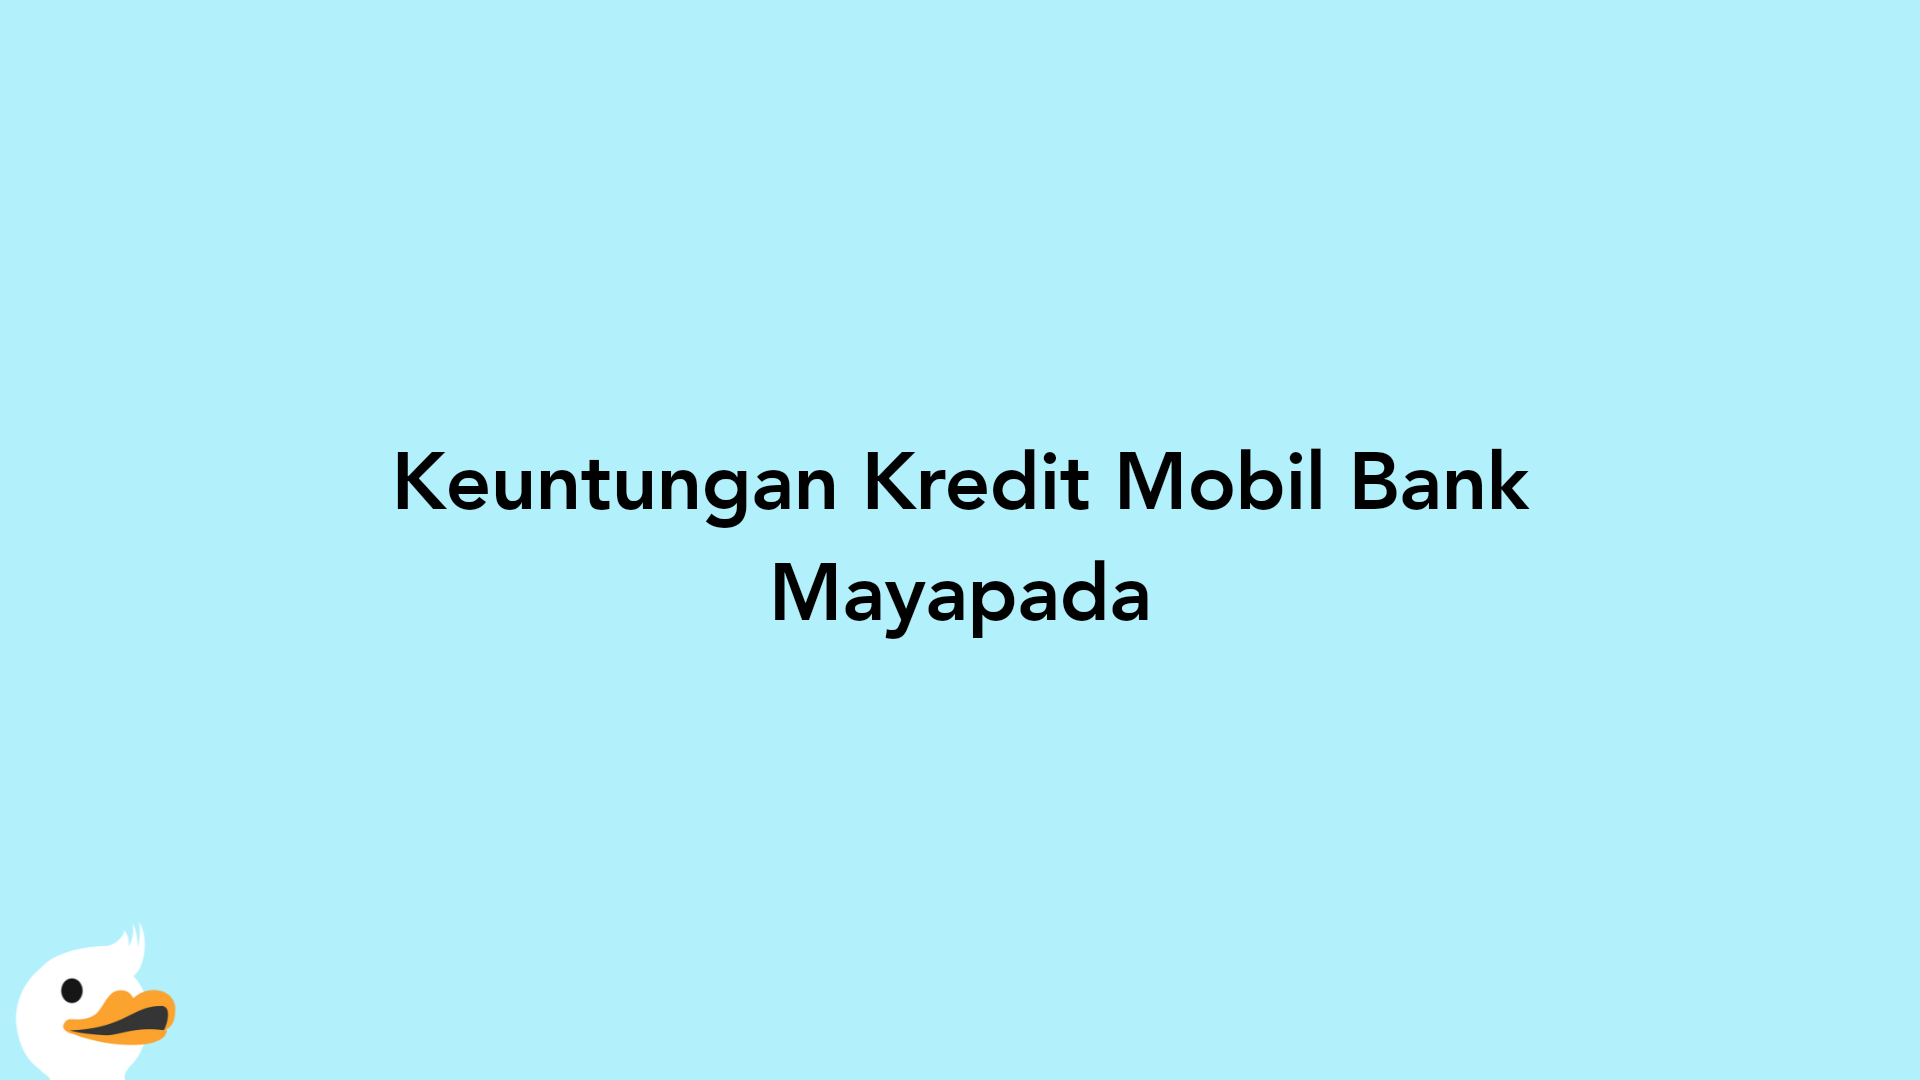 Keuntungan Kredit Mobil Bank Mayapada